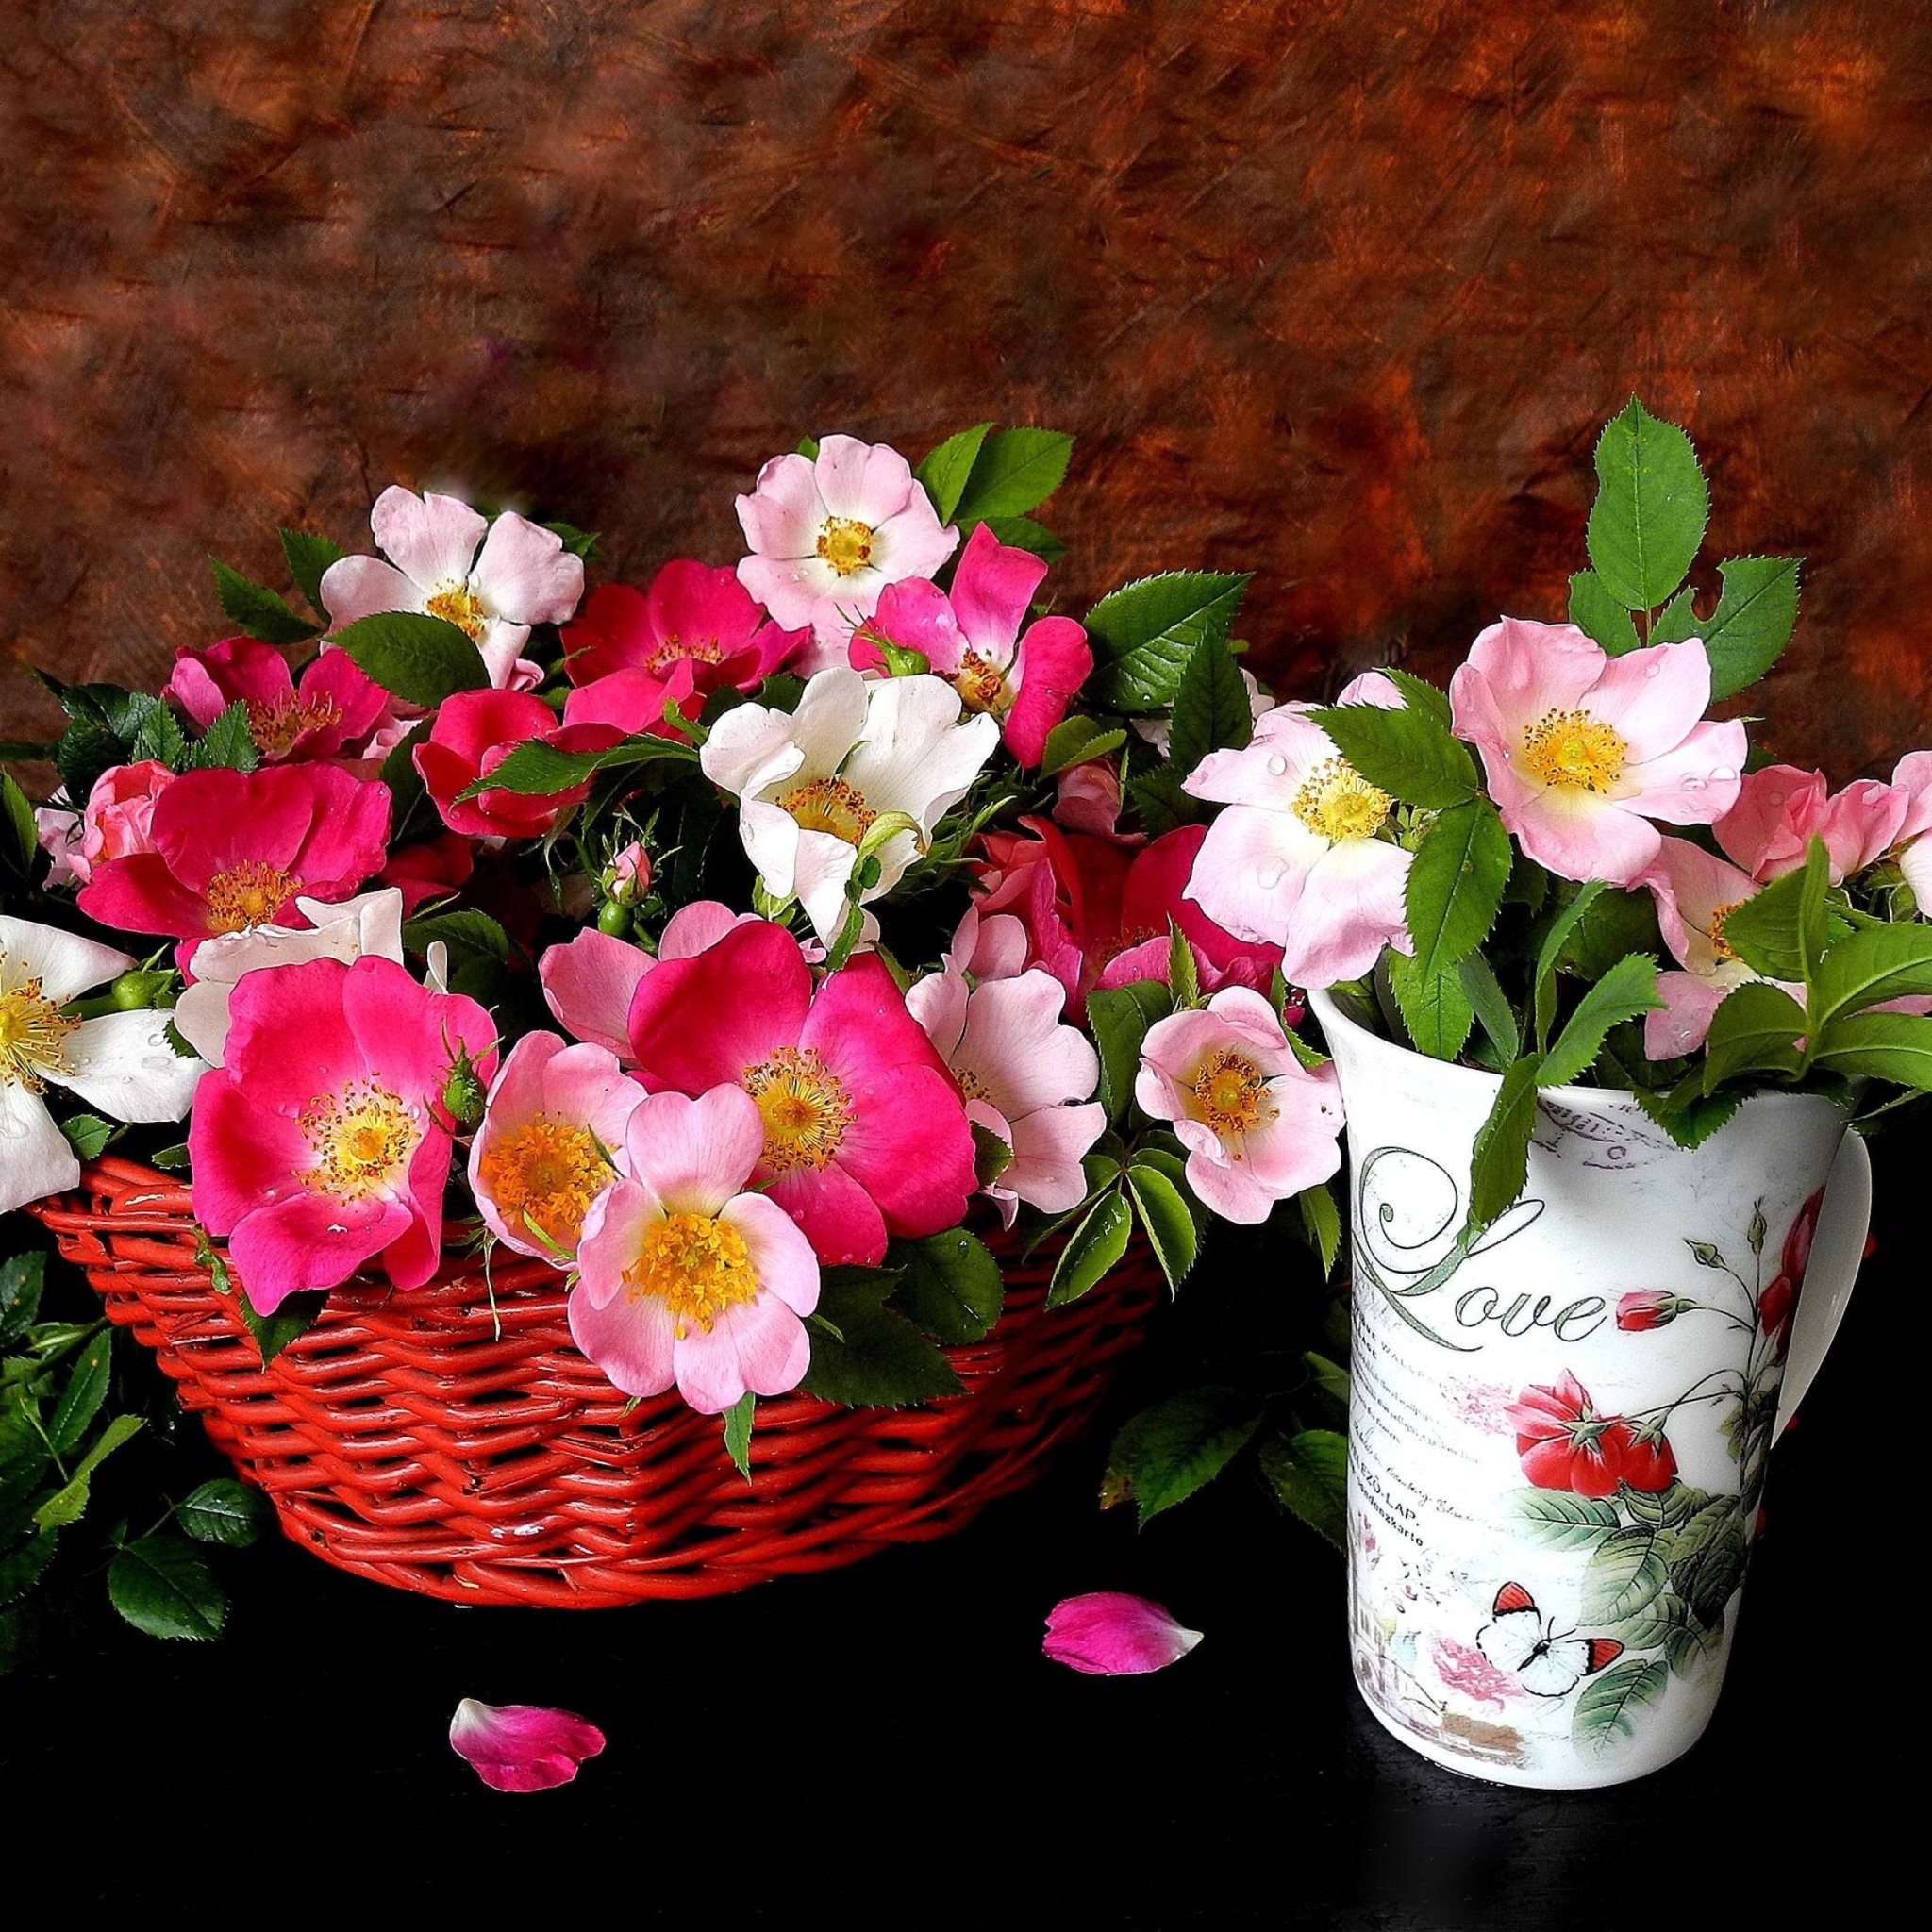 Sweetheart flowers wallpaper 2048x2048